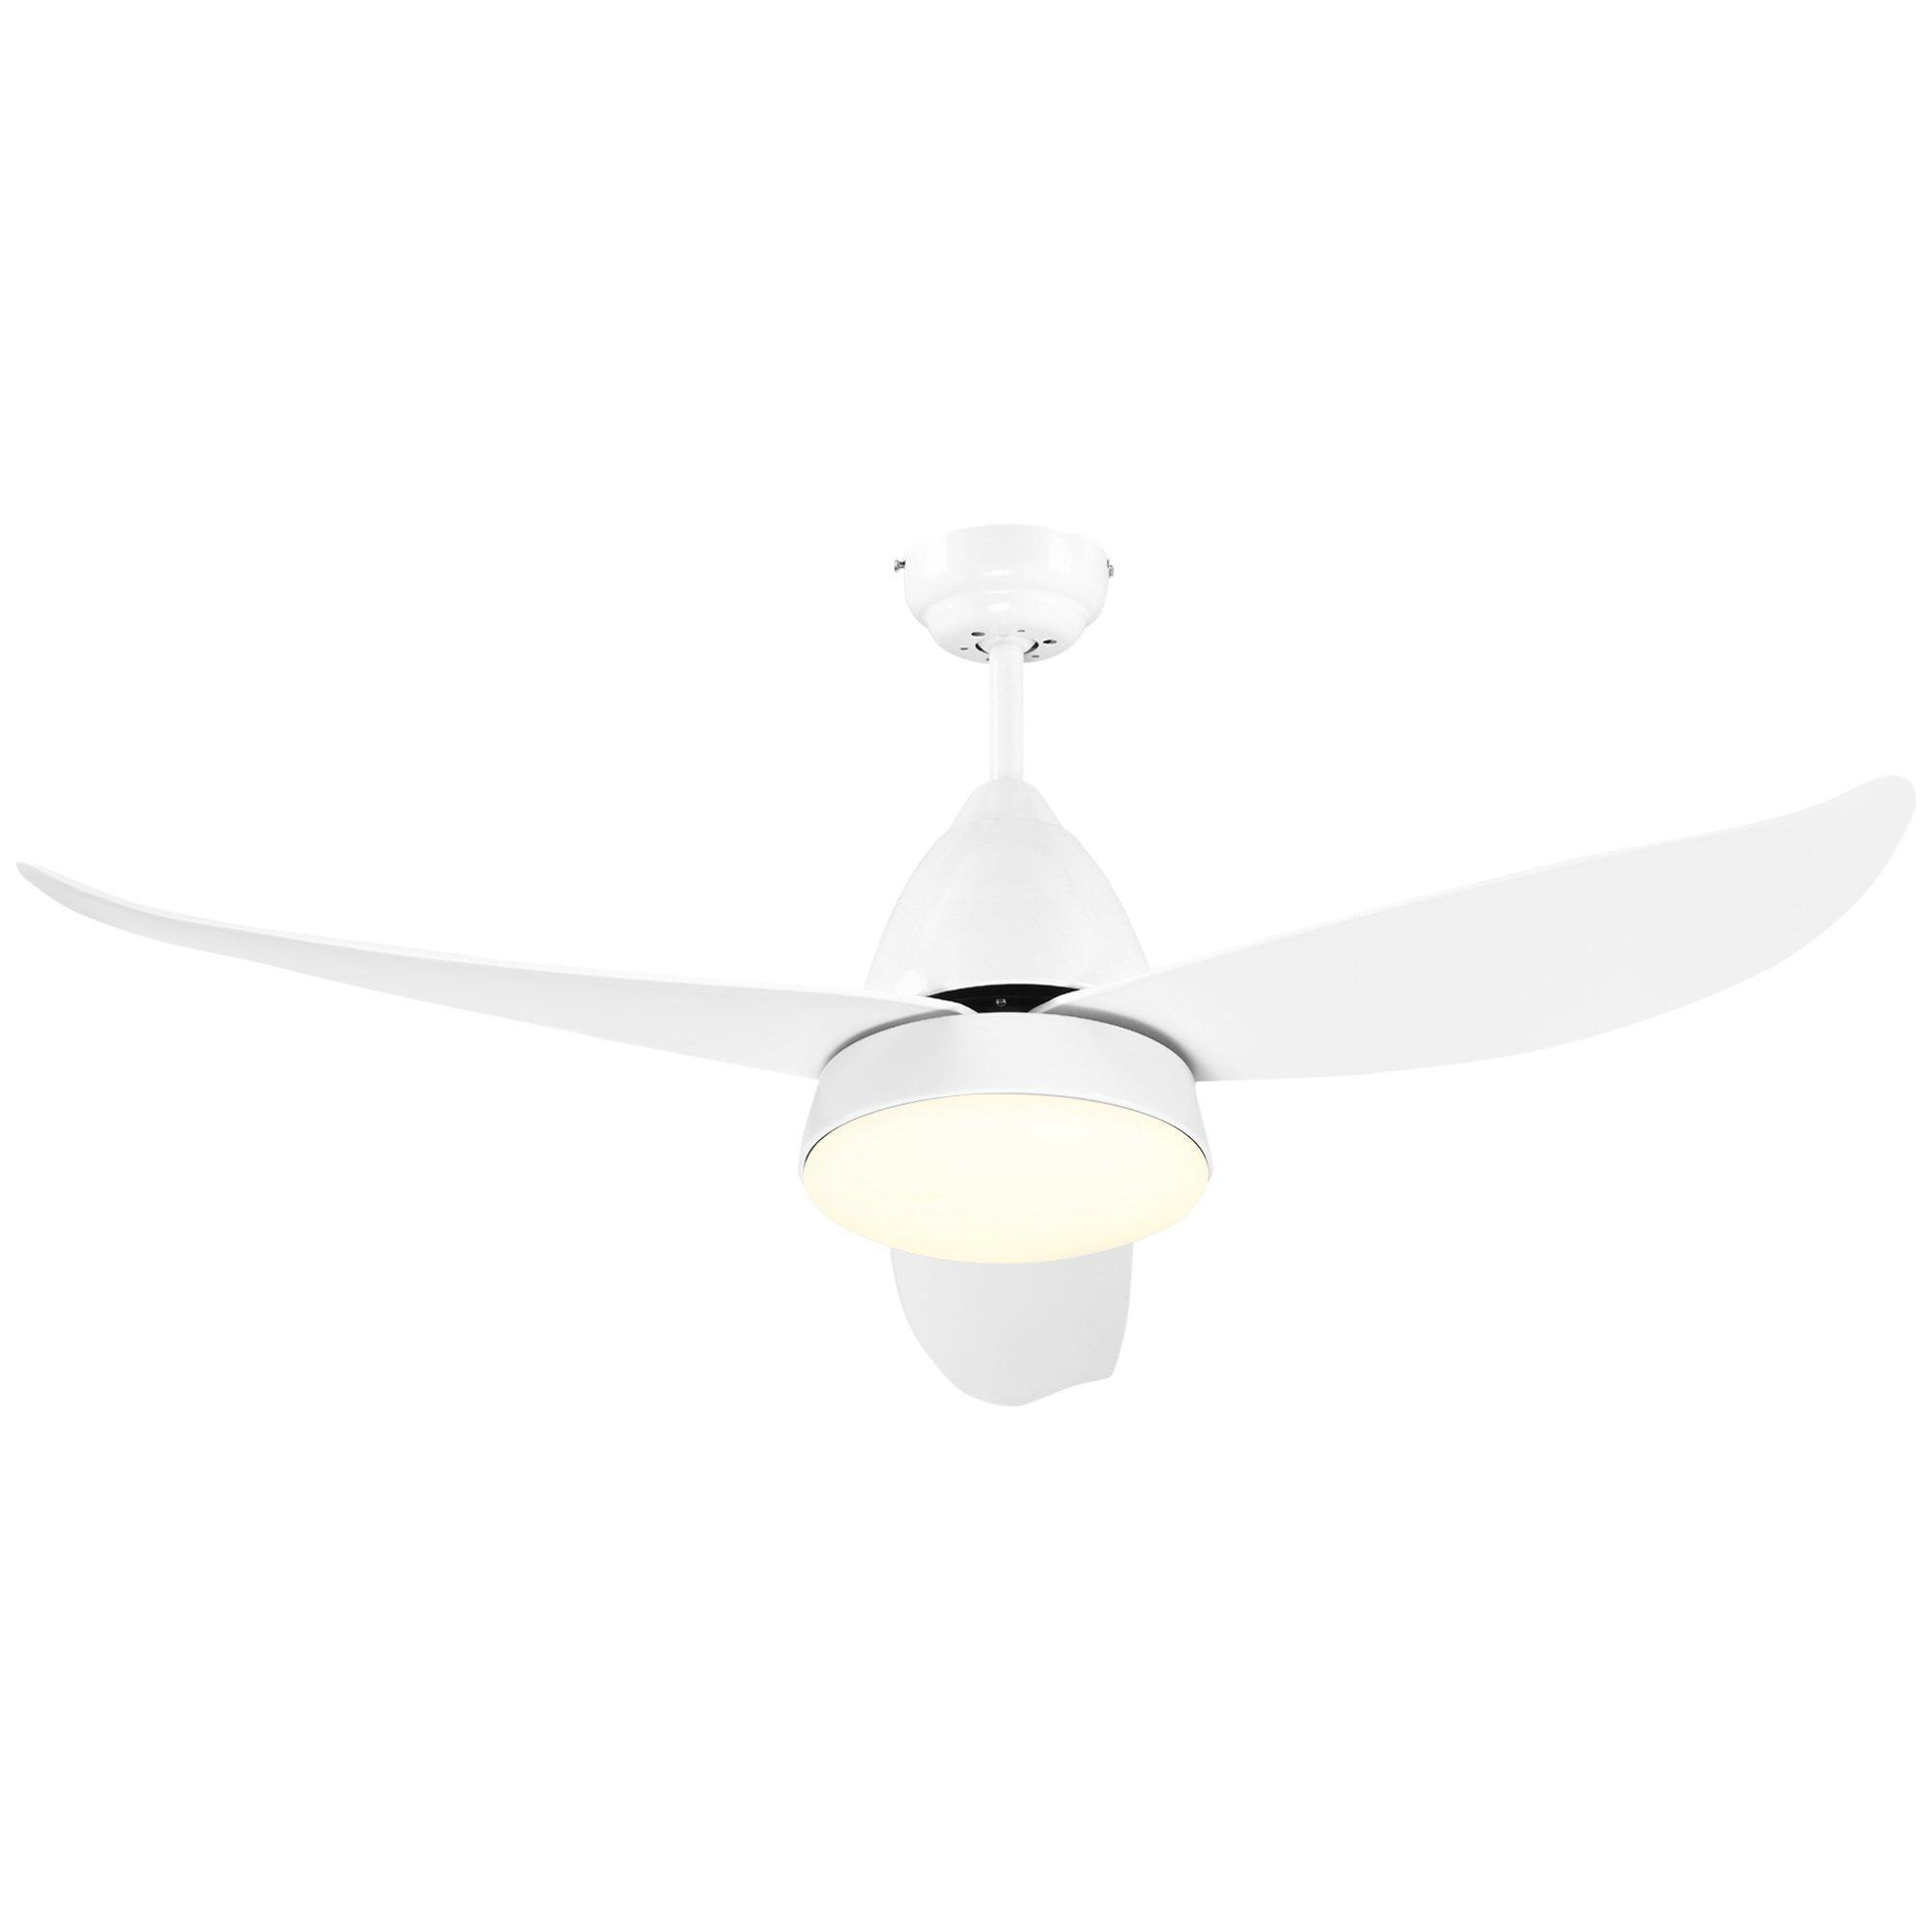 Ceiling Fan Light Reversible Airflow 3 Blades Mount Lighting Fan - image 1